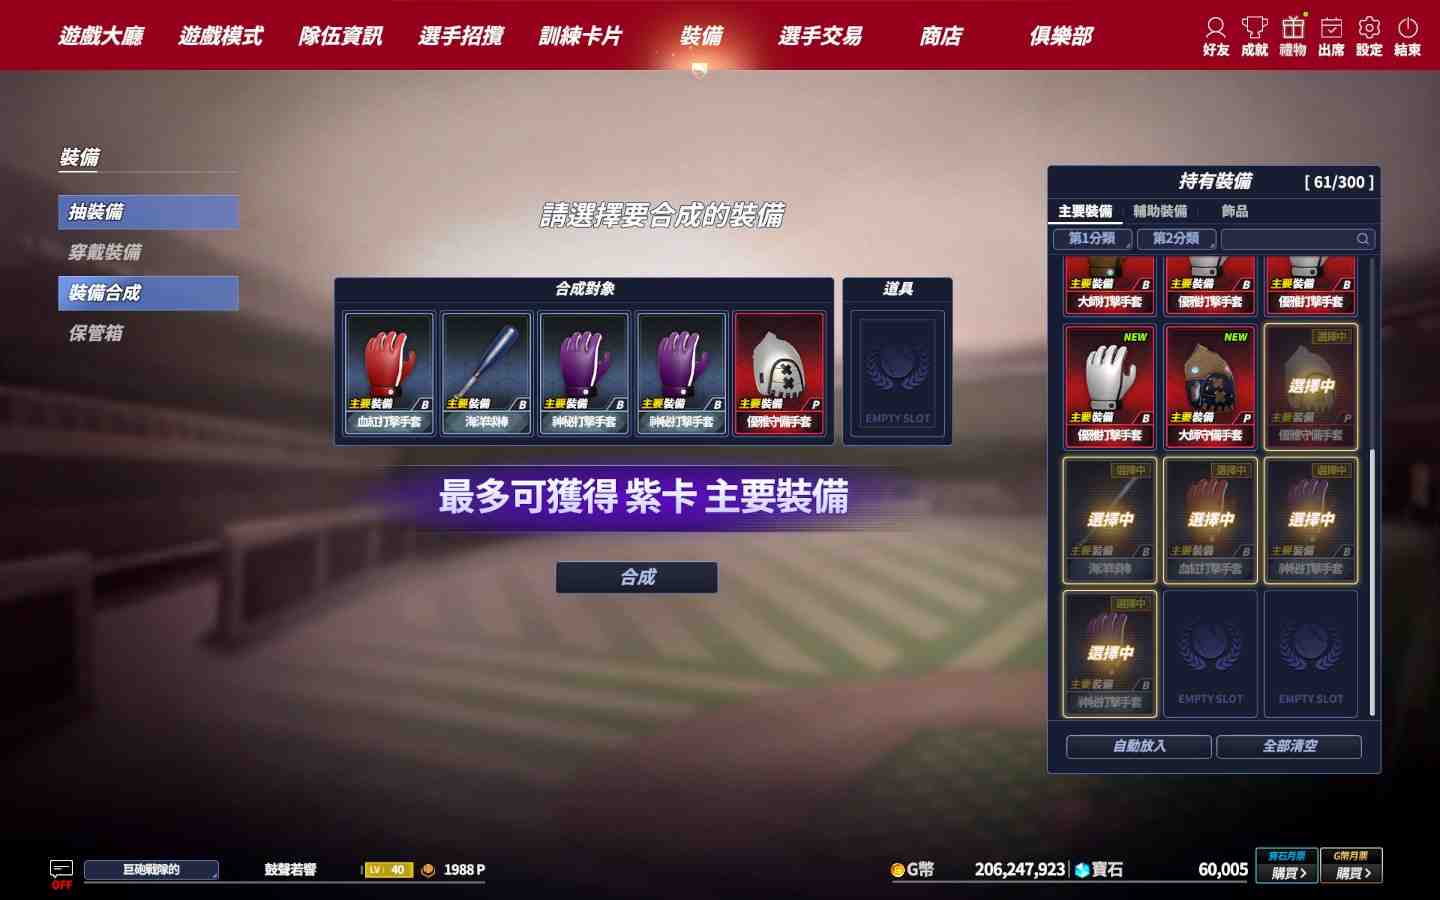 《全民打棒球REMASTERED》推出全新裝備系統 球員戰力再提升 天天登入 紫卡裝備寶箱等你來拿